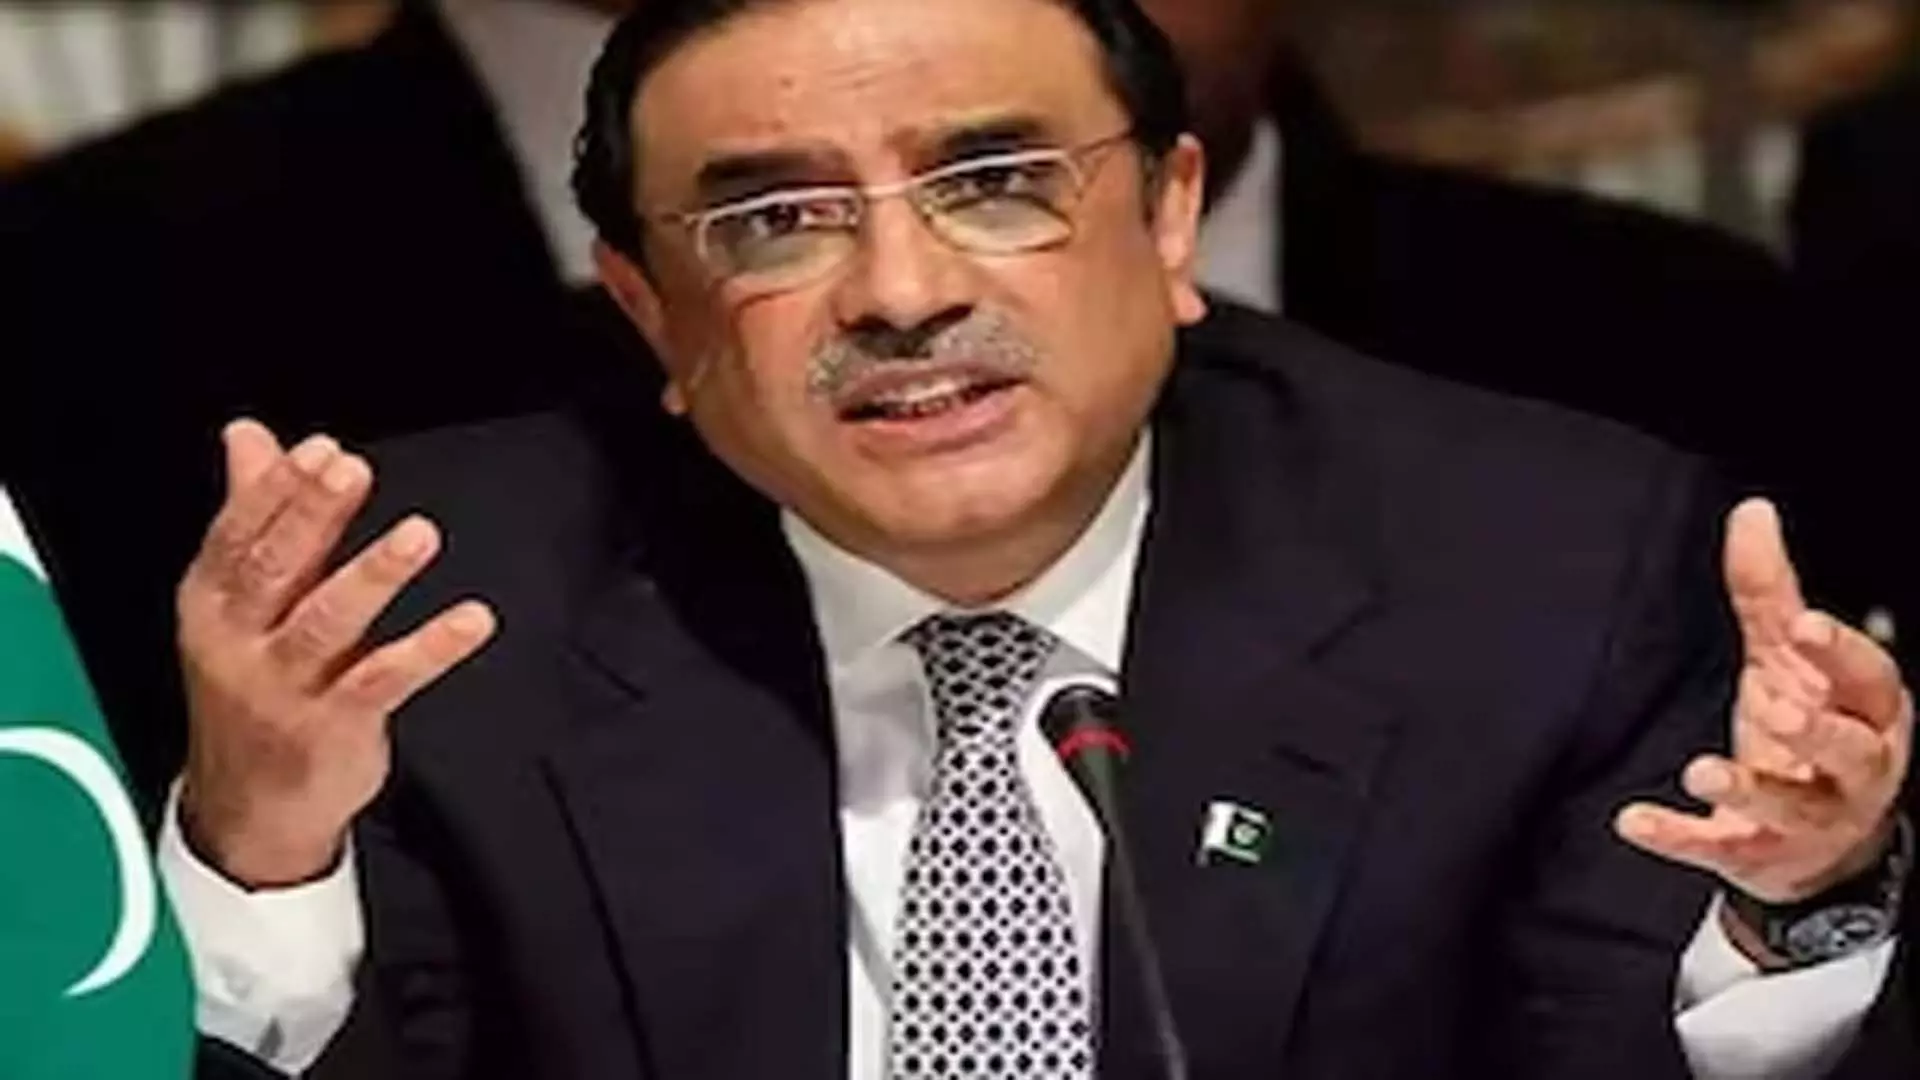 आसिफ अली जरदारी के पाकिस्तान के राष्ट्रपति बनने की संभावना